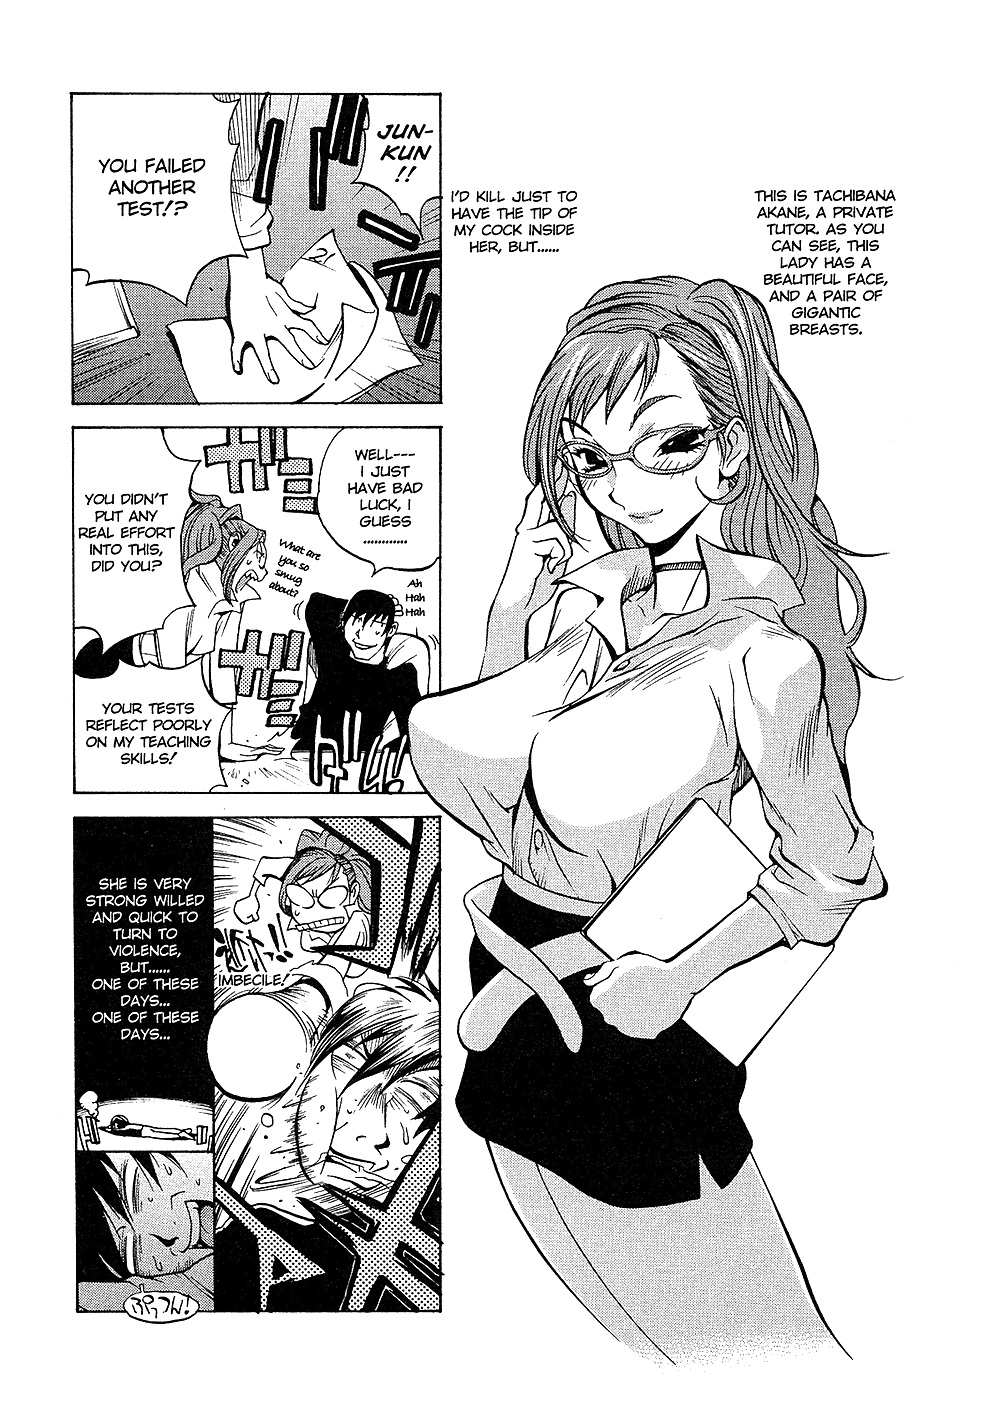 (comic hentai) yumisuke kotoyoshi erotic works #2
 #21623304